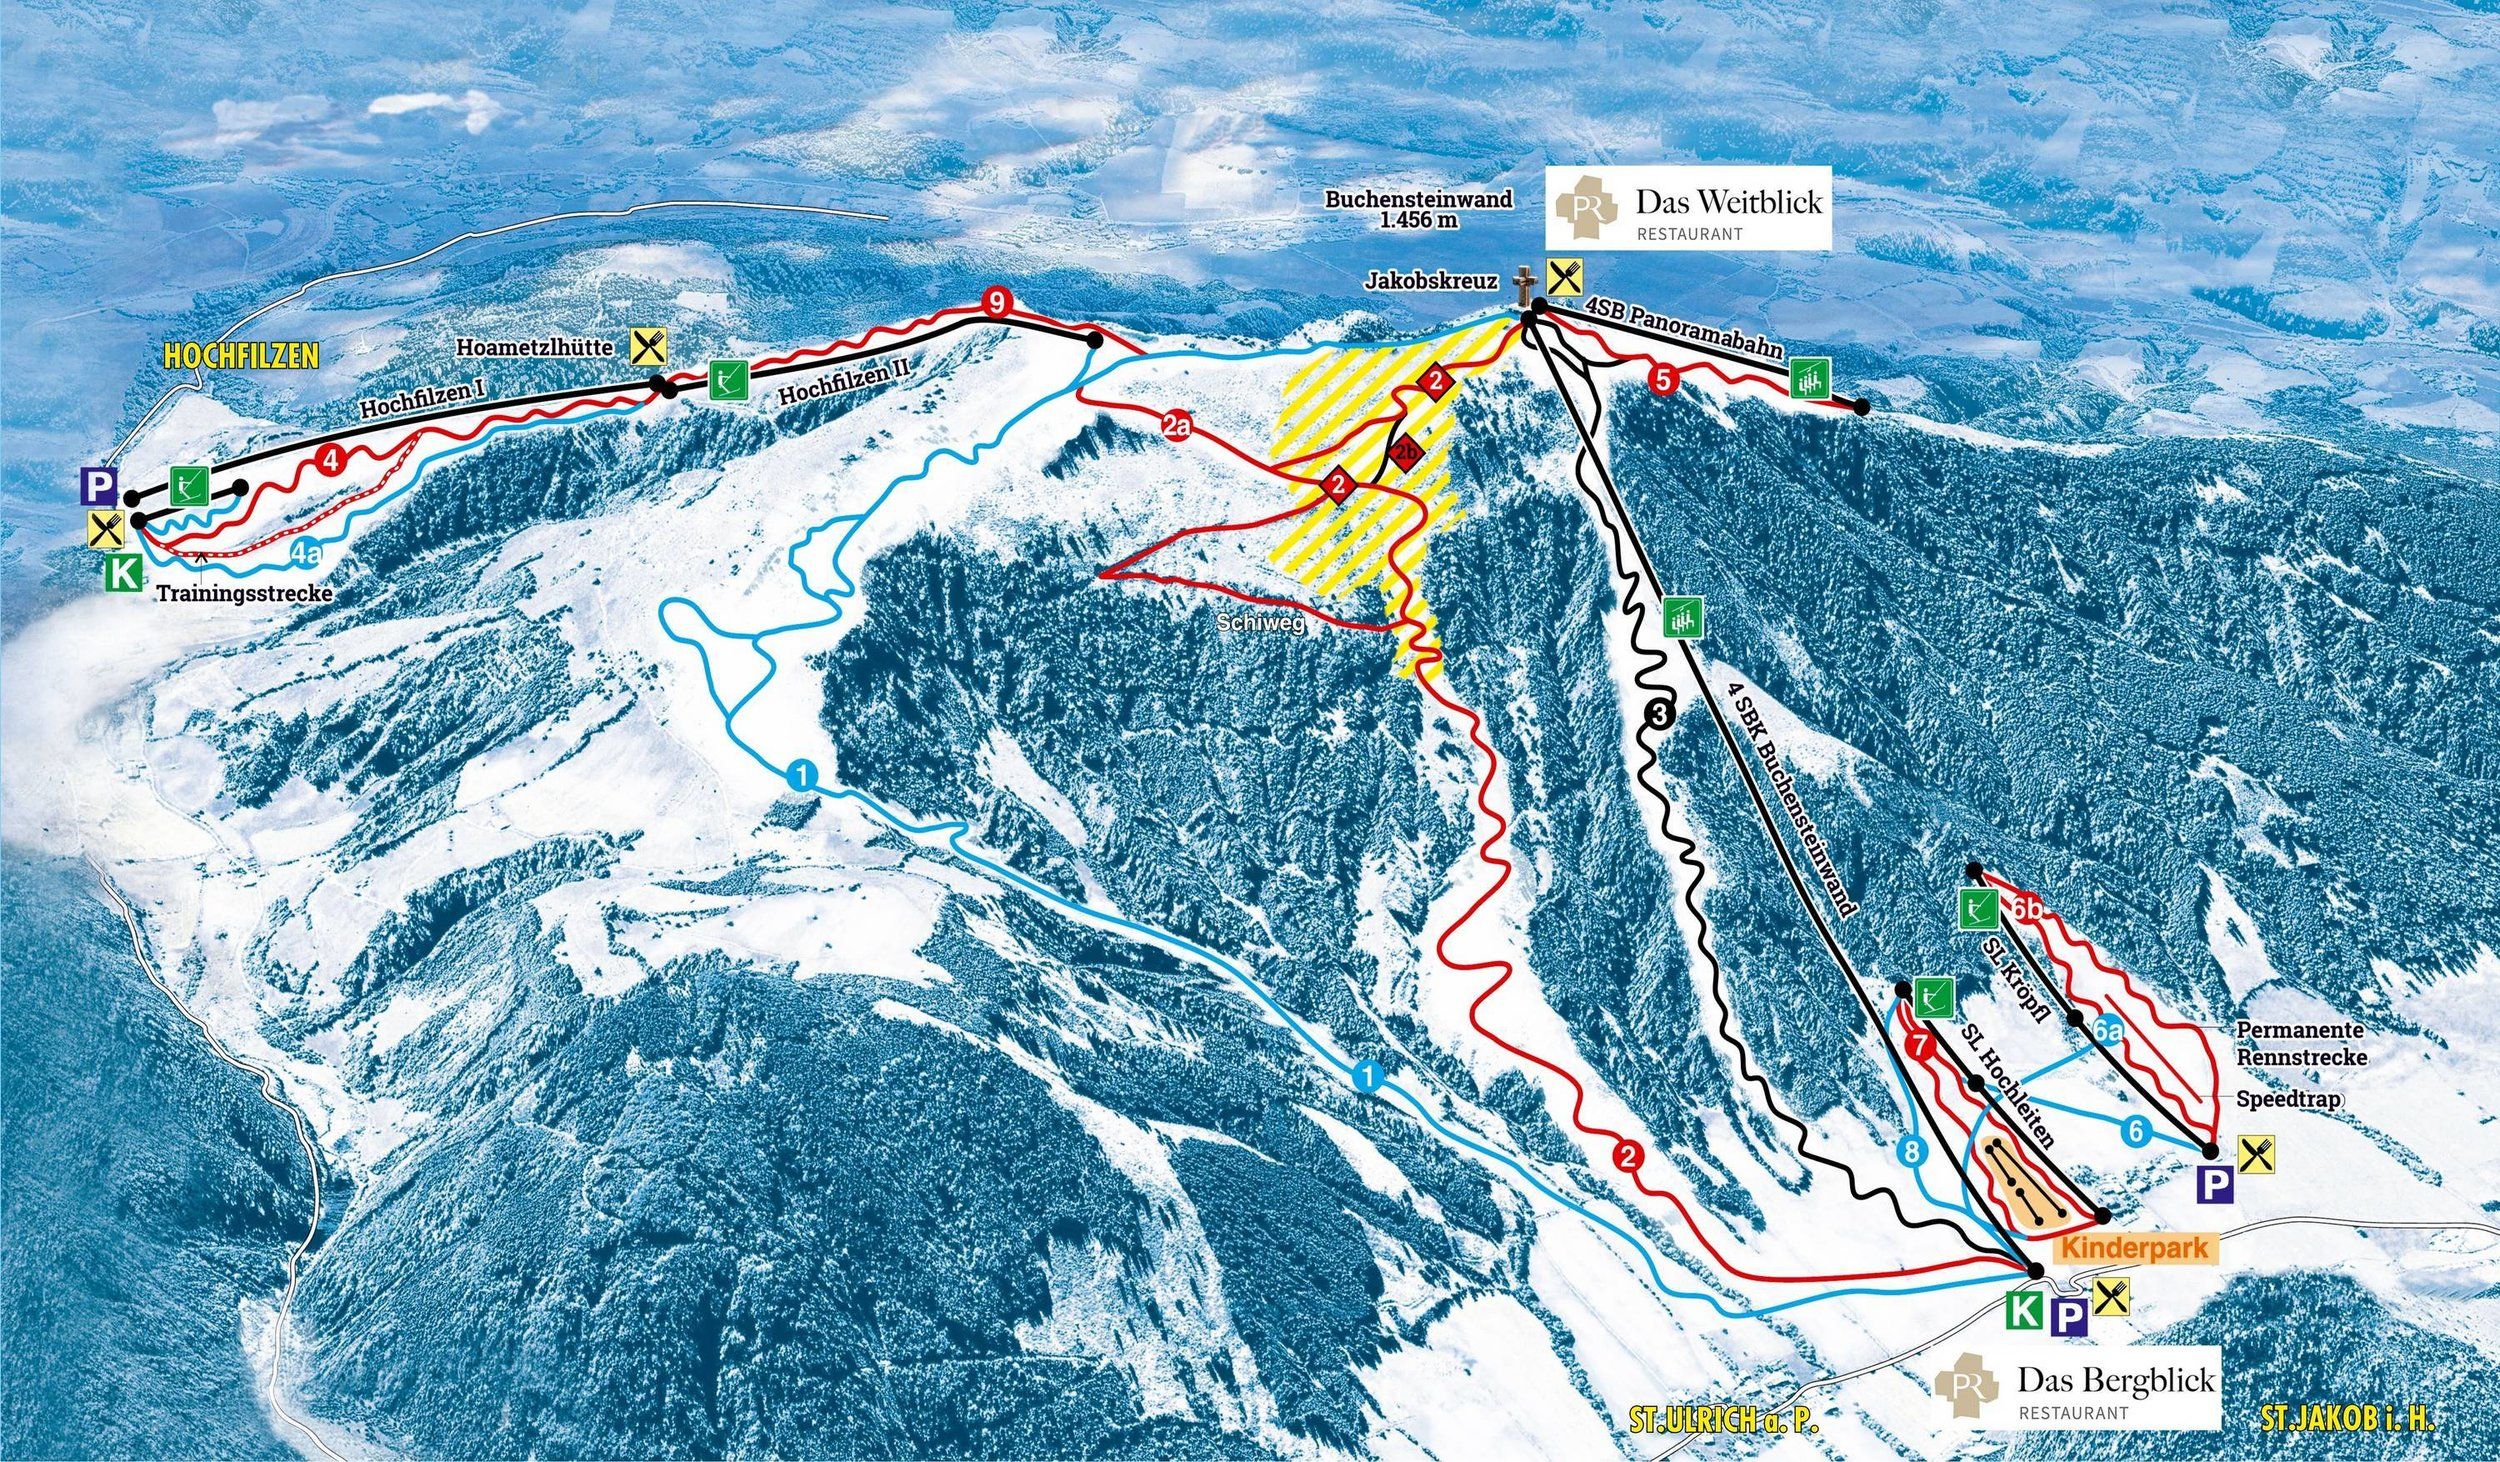 Pistenplan / Karte Skigebiet Hochfilzen, 